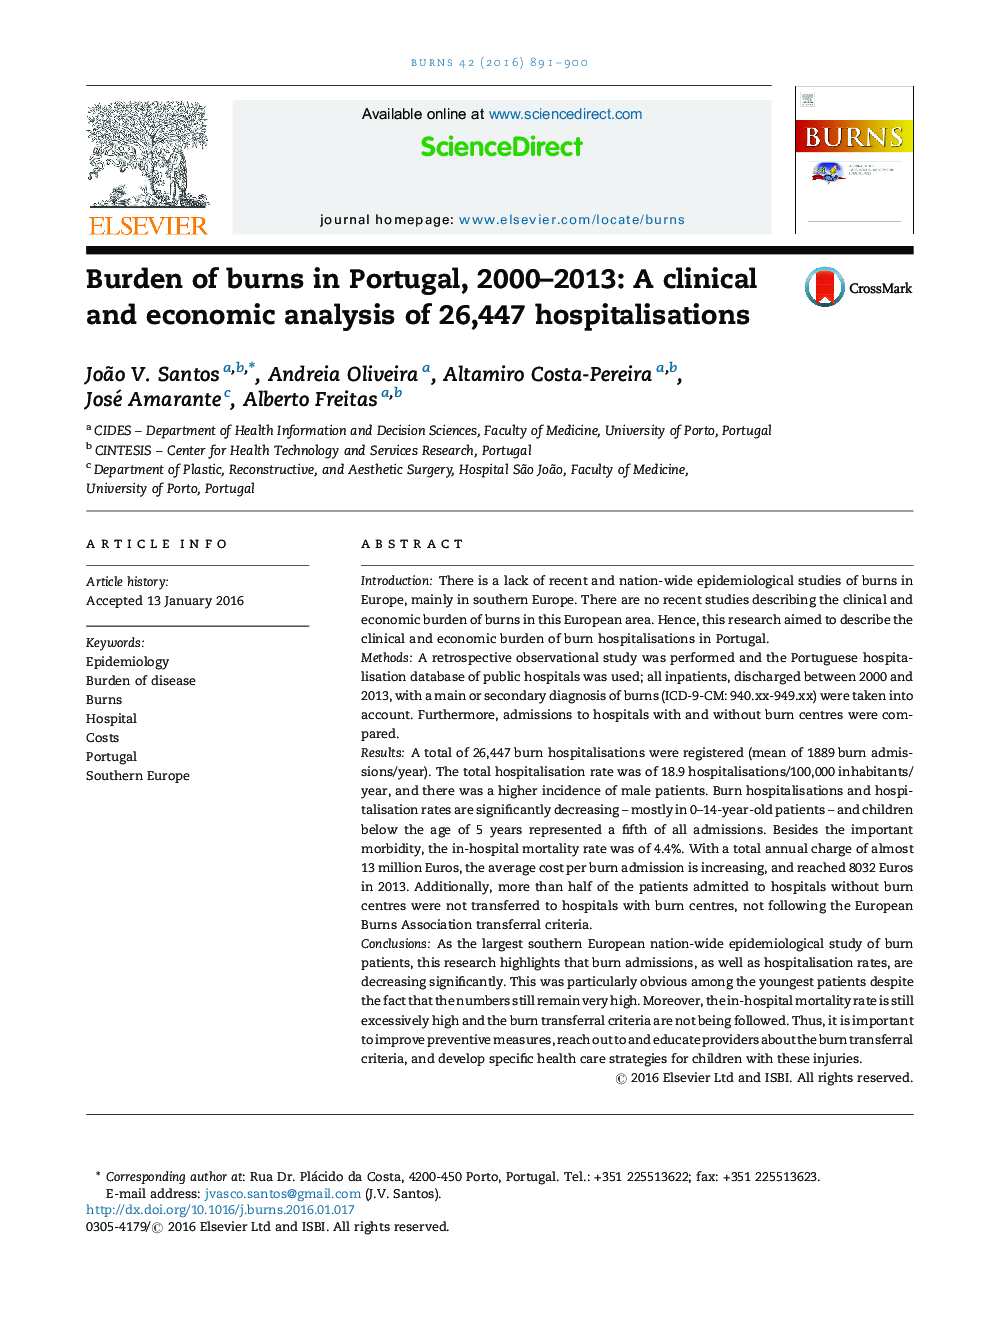 بار سوختگی در پرتغال، 2000-2013: یک تجزیه و تحلیل بالینی و اقتصادی از 26477 بیمار بستری شده